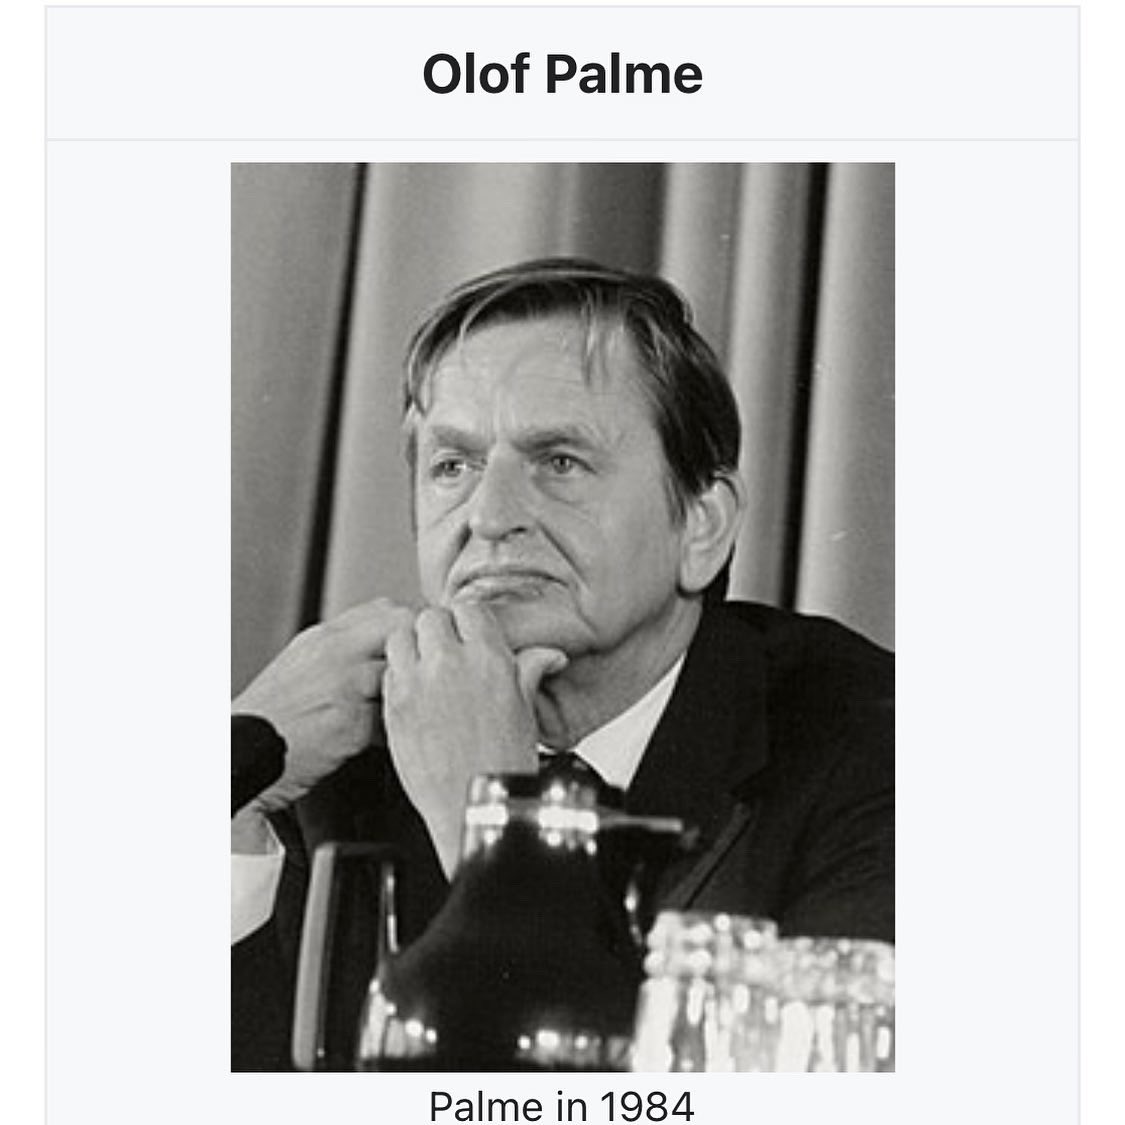 Durante mi visita de trabajo en Estocolmo, expresé mis respetos a la memoria de Olof Palme, ex primer ministro de Suecia, y amigo de dominicanos, entre ellos José Francisco Peña Gómez. Fue asesinado el 28 de febrero de 1986. Pilar del estado de bienestar que tiene Suecia hoy día.